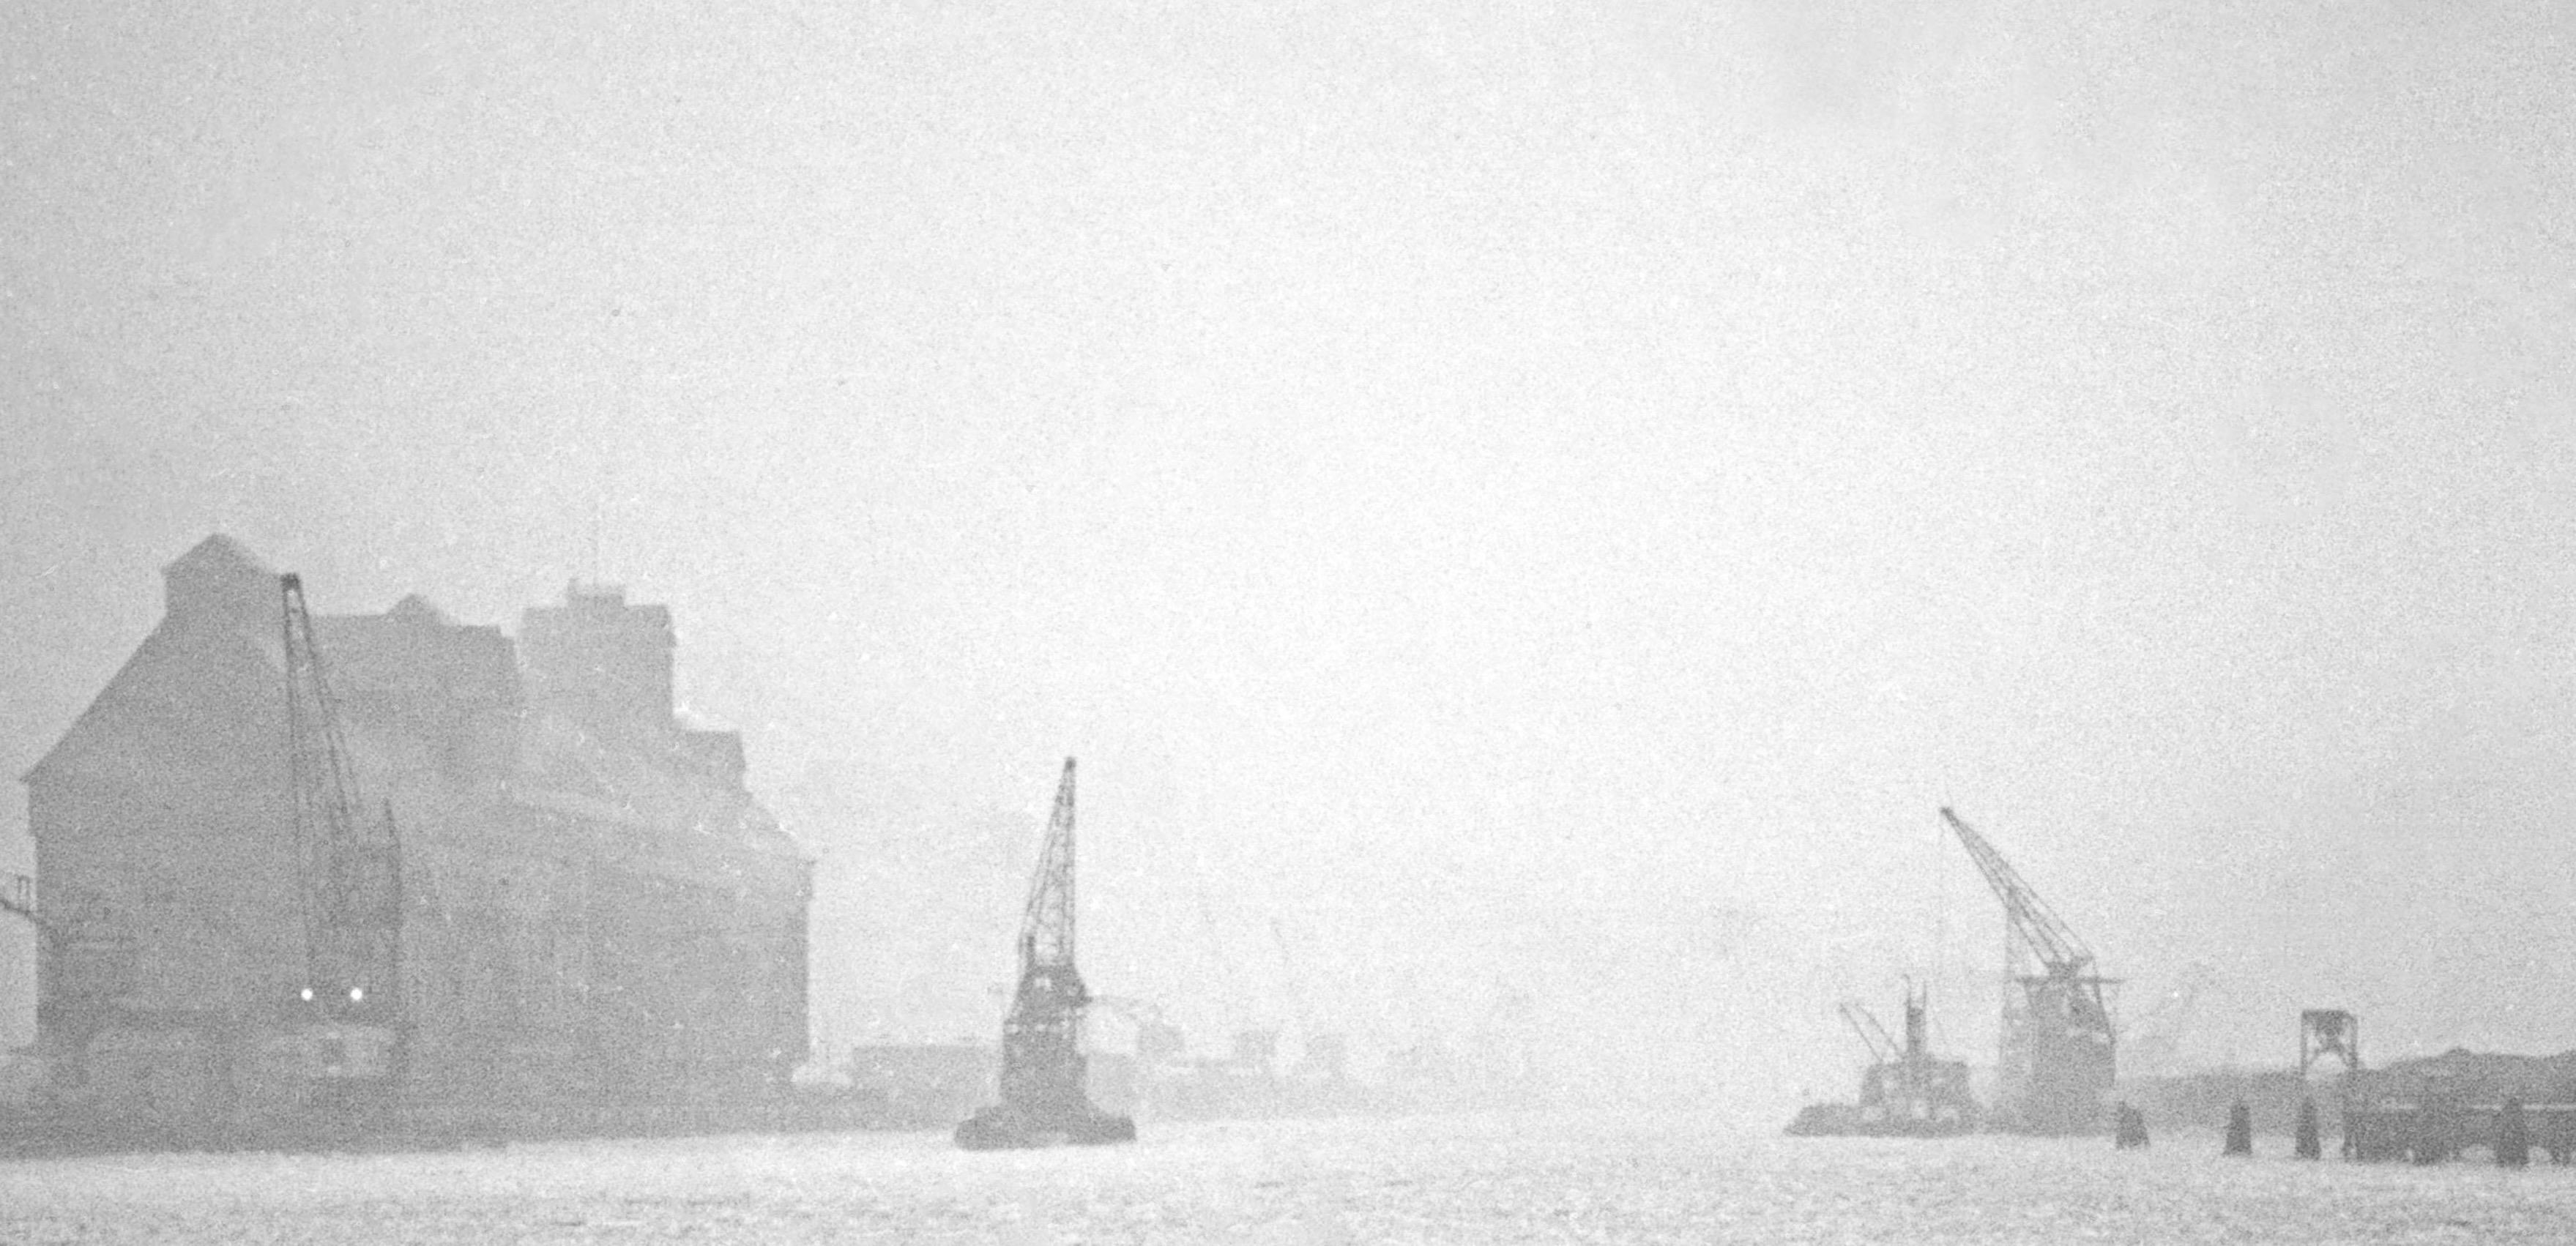 jour d'hiver hiver Foggy au port de Koenigsberg, Prusse orientale Allemagne 1934 Imprimé plus tard  - Moderne Photograph par Karl Heinrich Lämmel